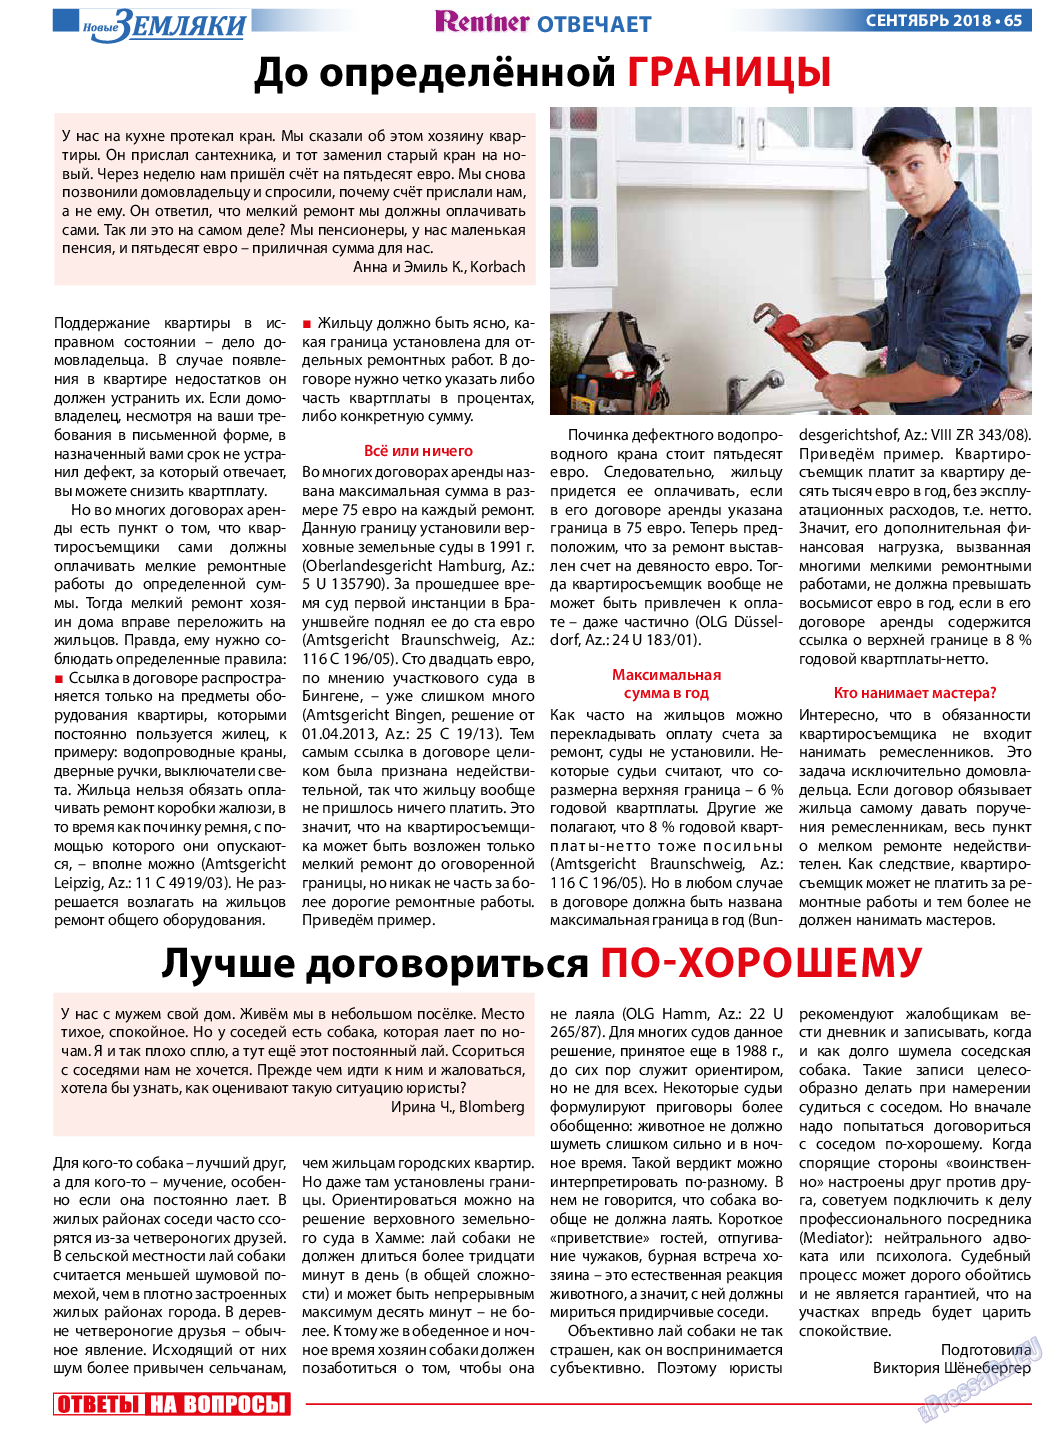 Новые Земляки, газета. 2018 №9 стр.65